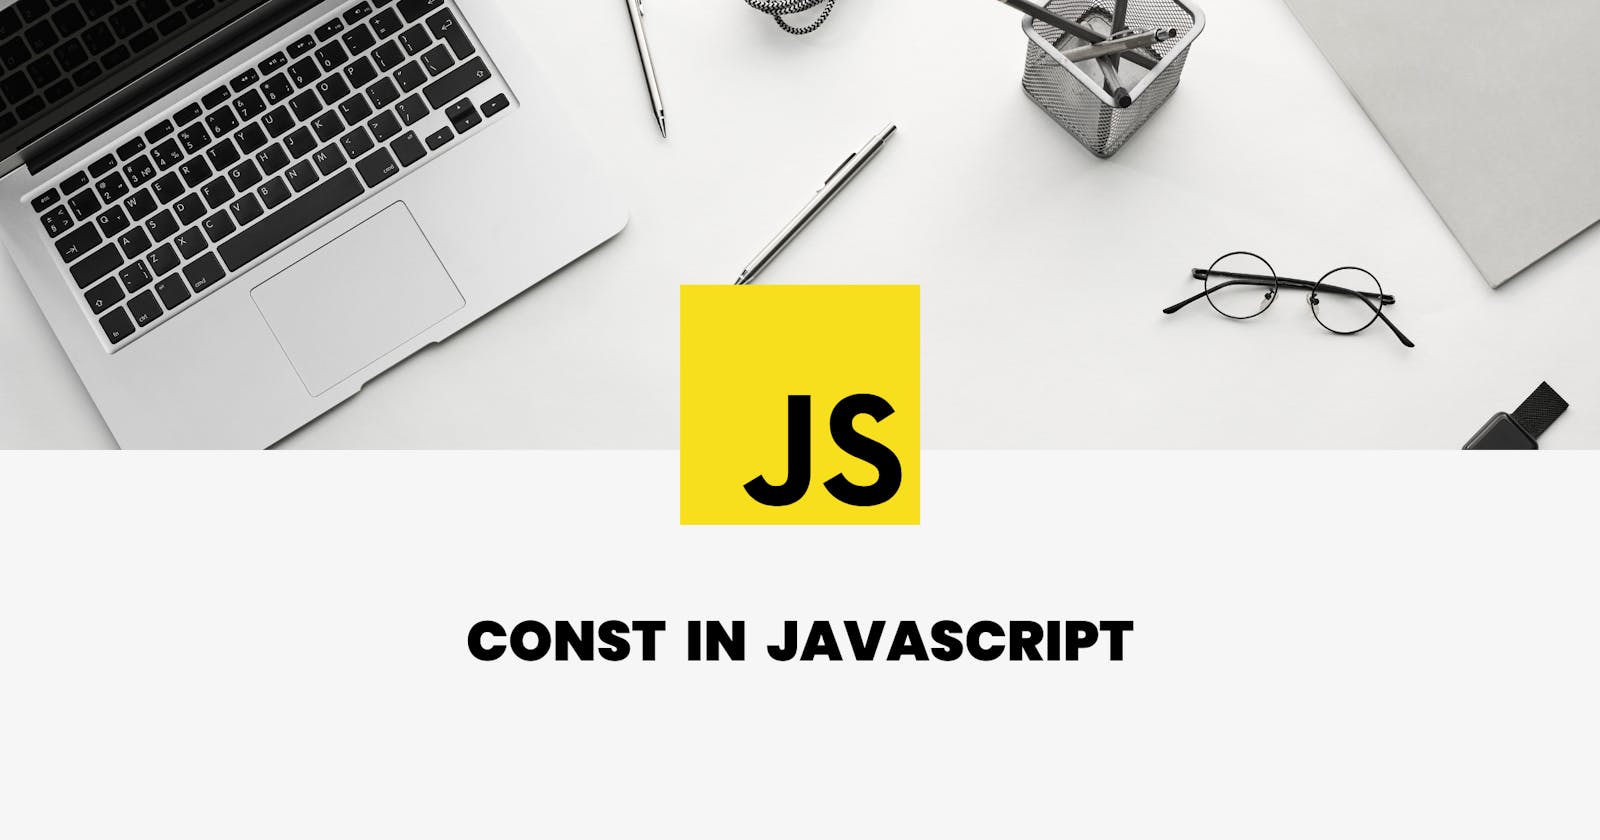 Let's understand const in JavaScript